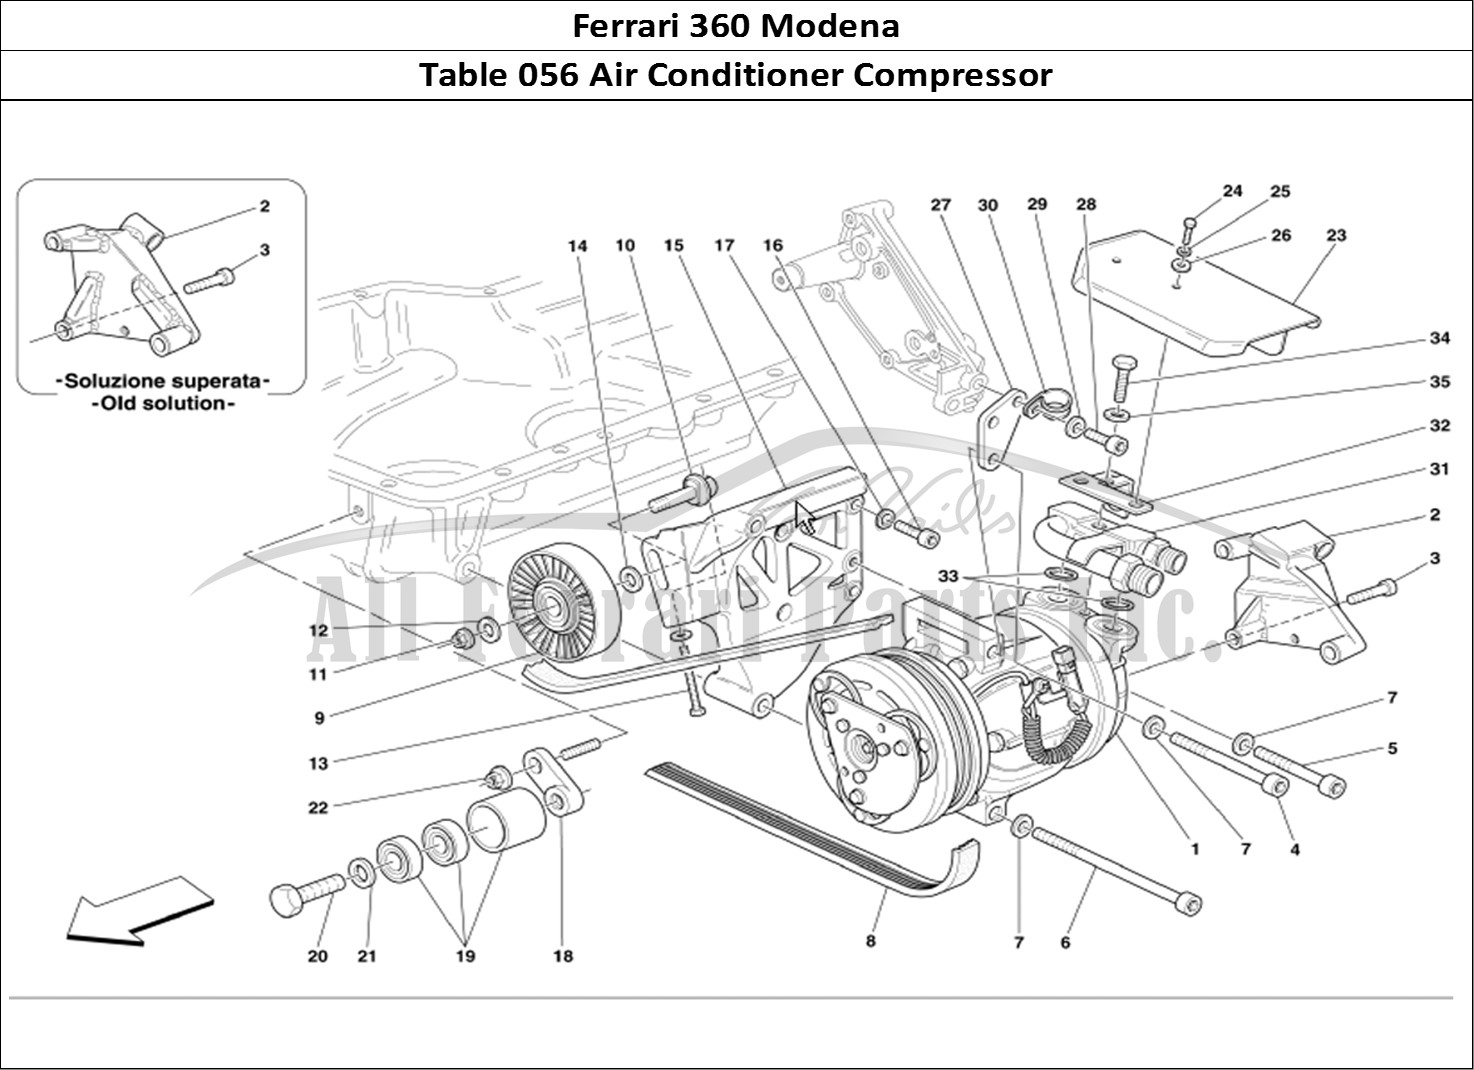 Ferrari Parts Ferrari 360 Modena Page 056 Air Conditioning Compress